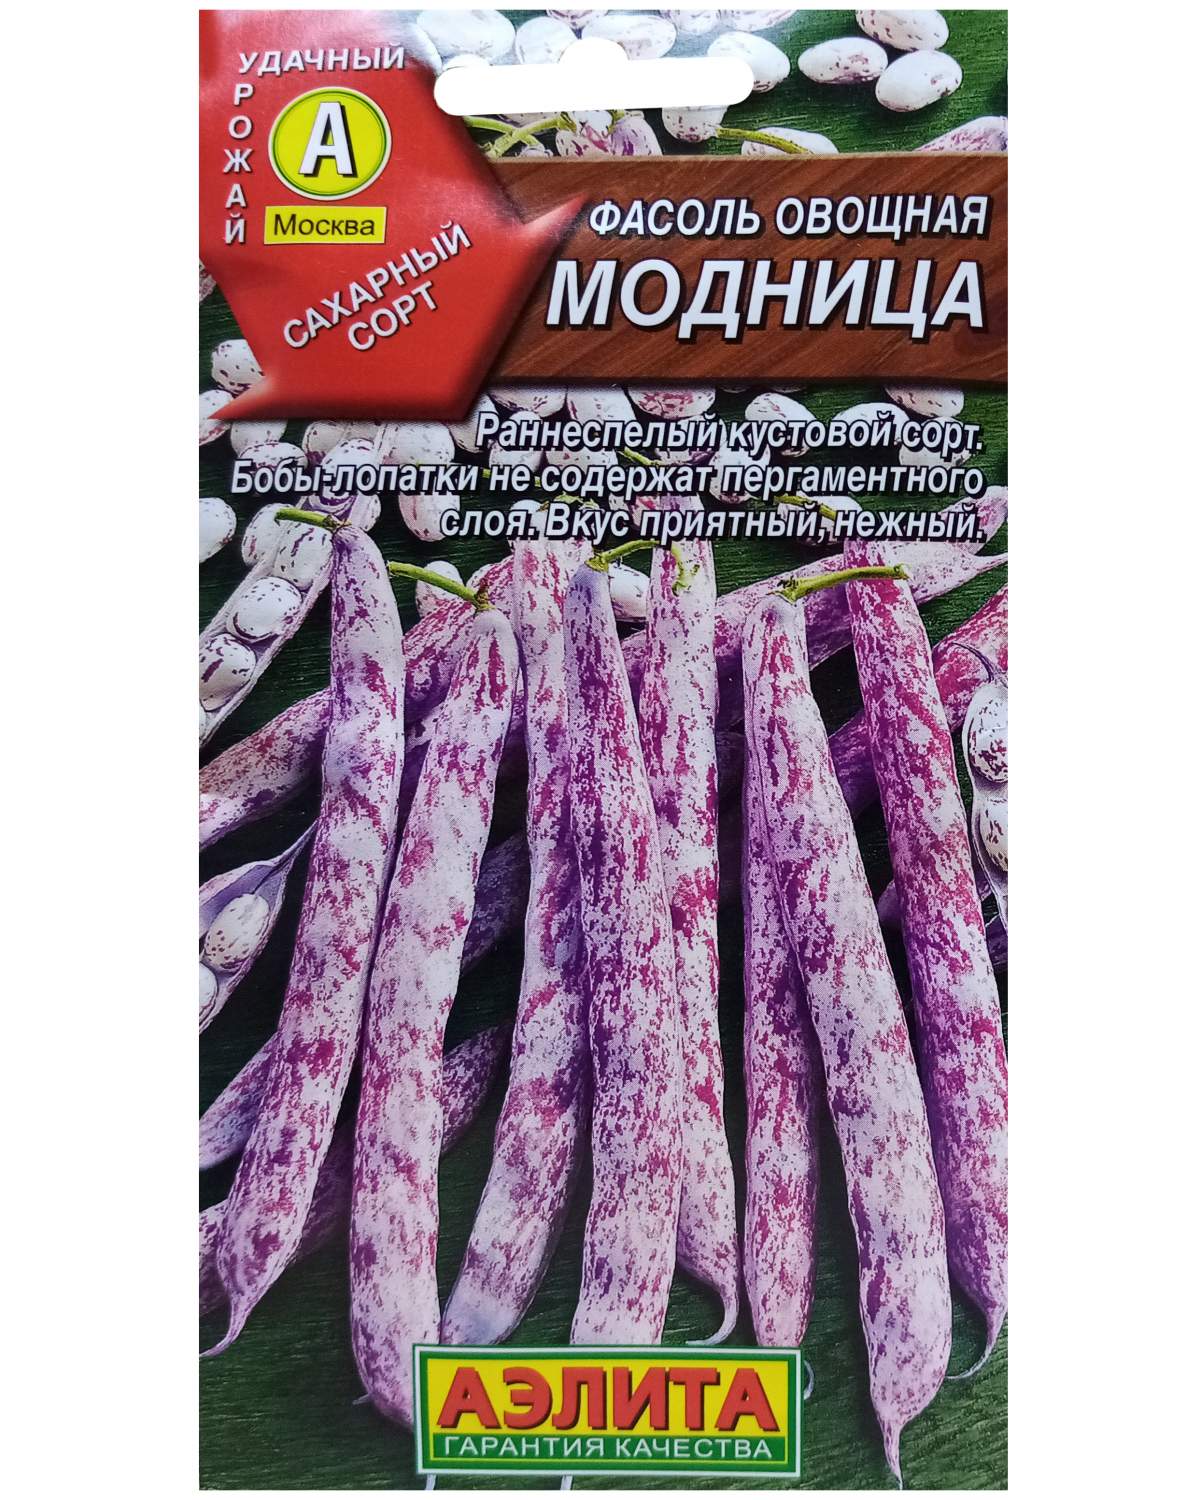 Семена фасоль Аэлита Модница 1 уп. - купить в Москве, цены на Мегамаркет